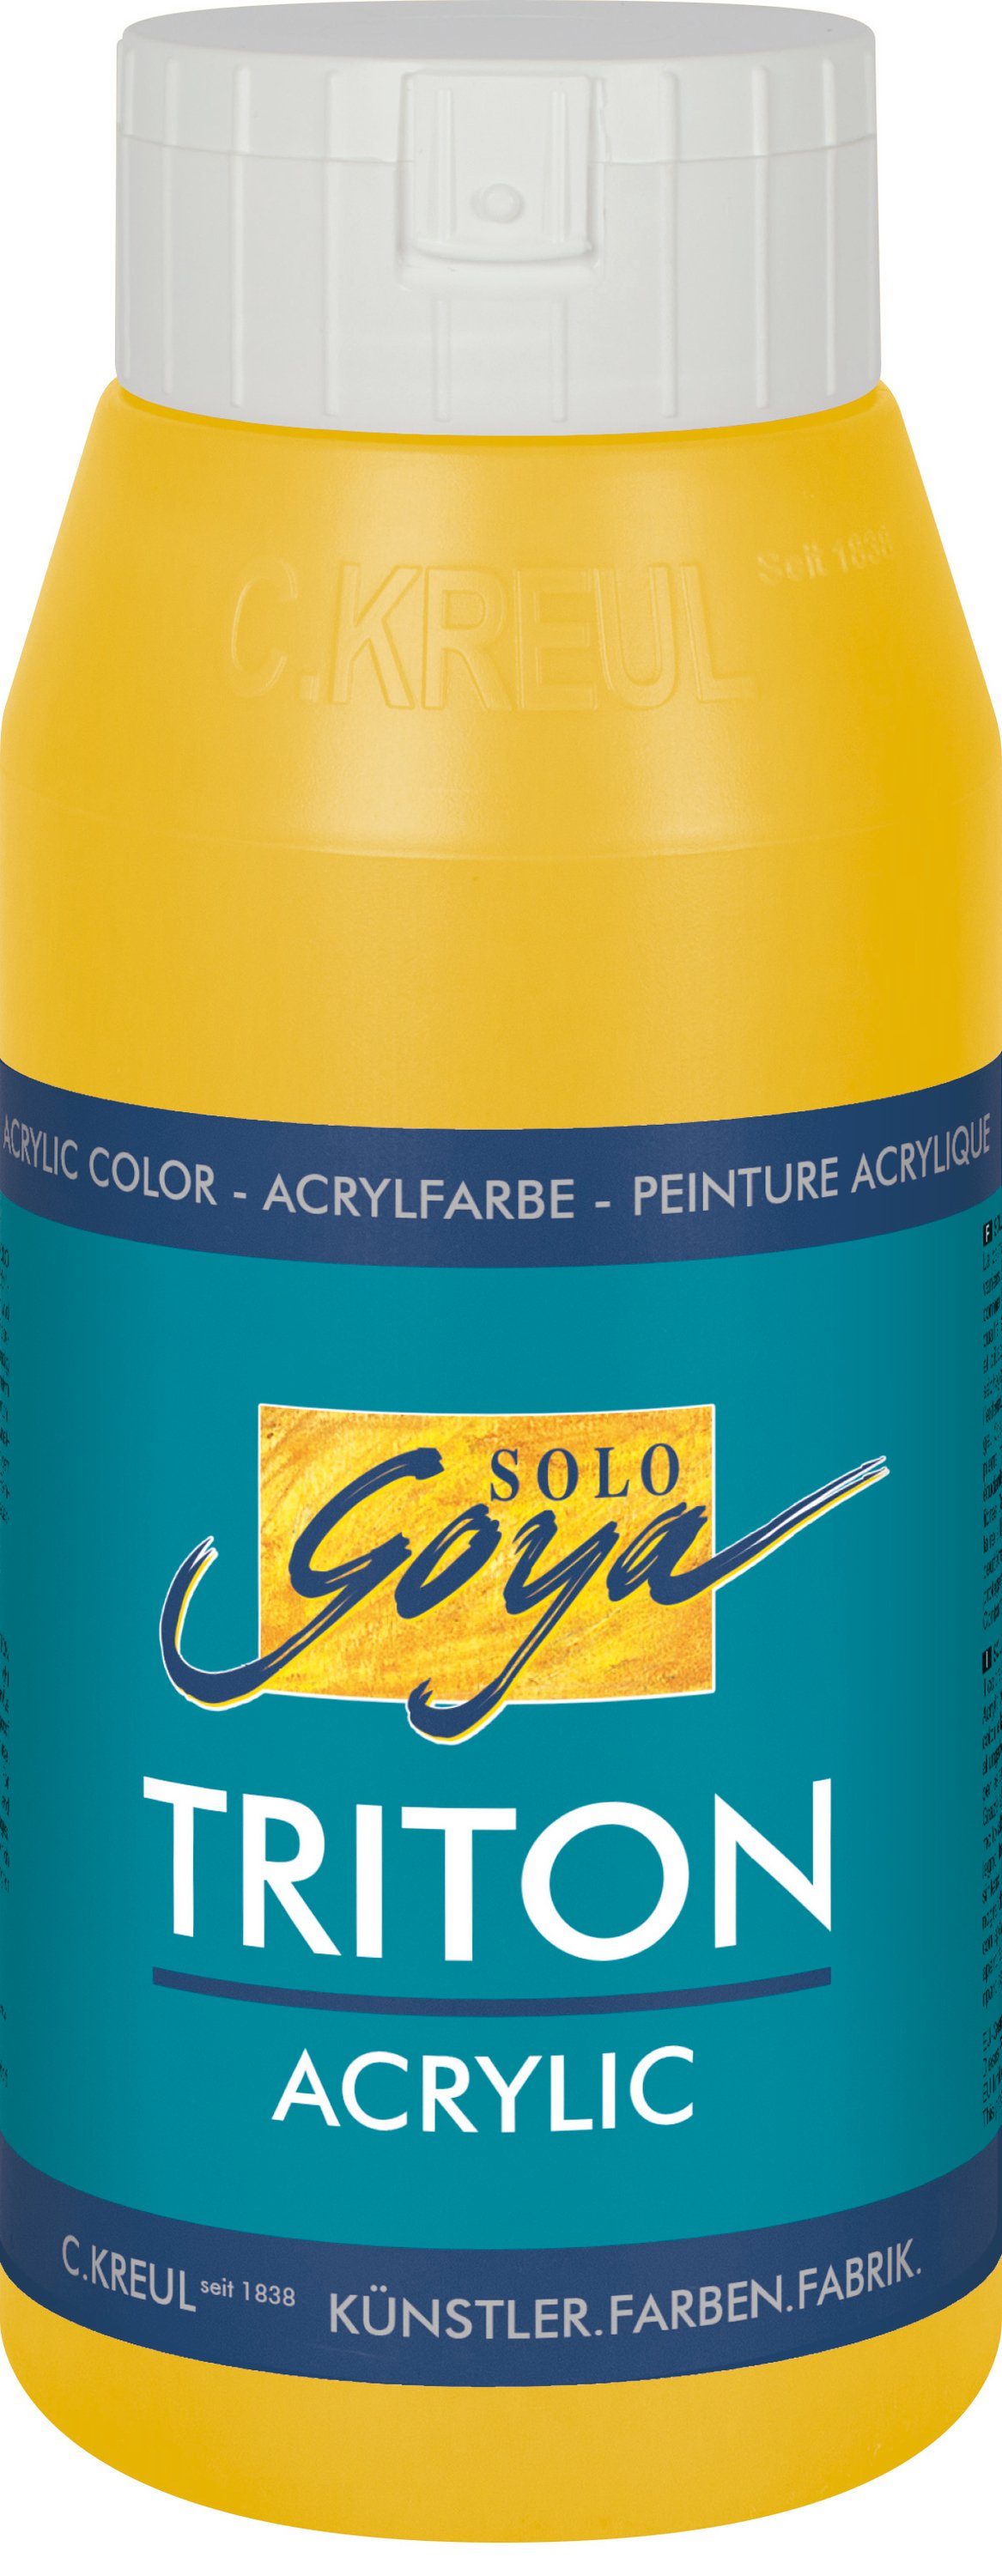 Kreul Acrylfarbe Solo Goya Triton Acrylic, 750 ml Gold